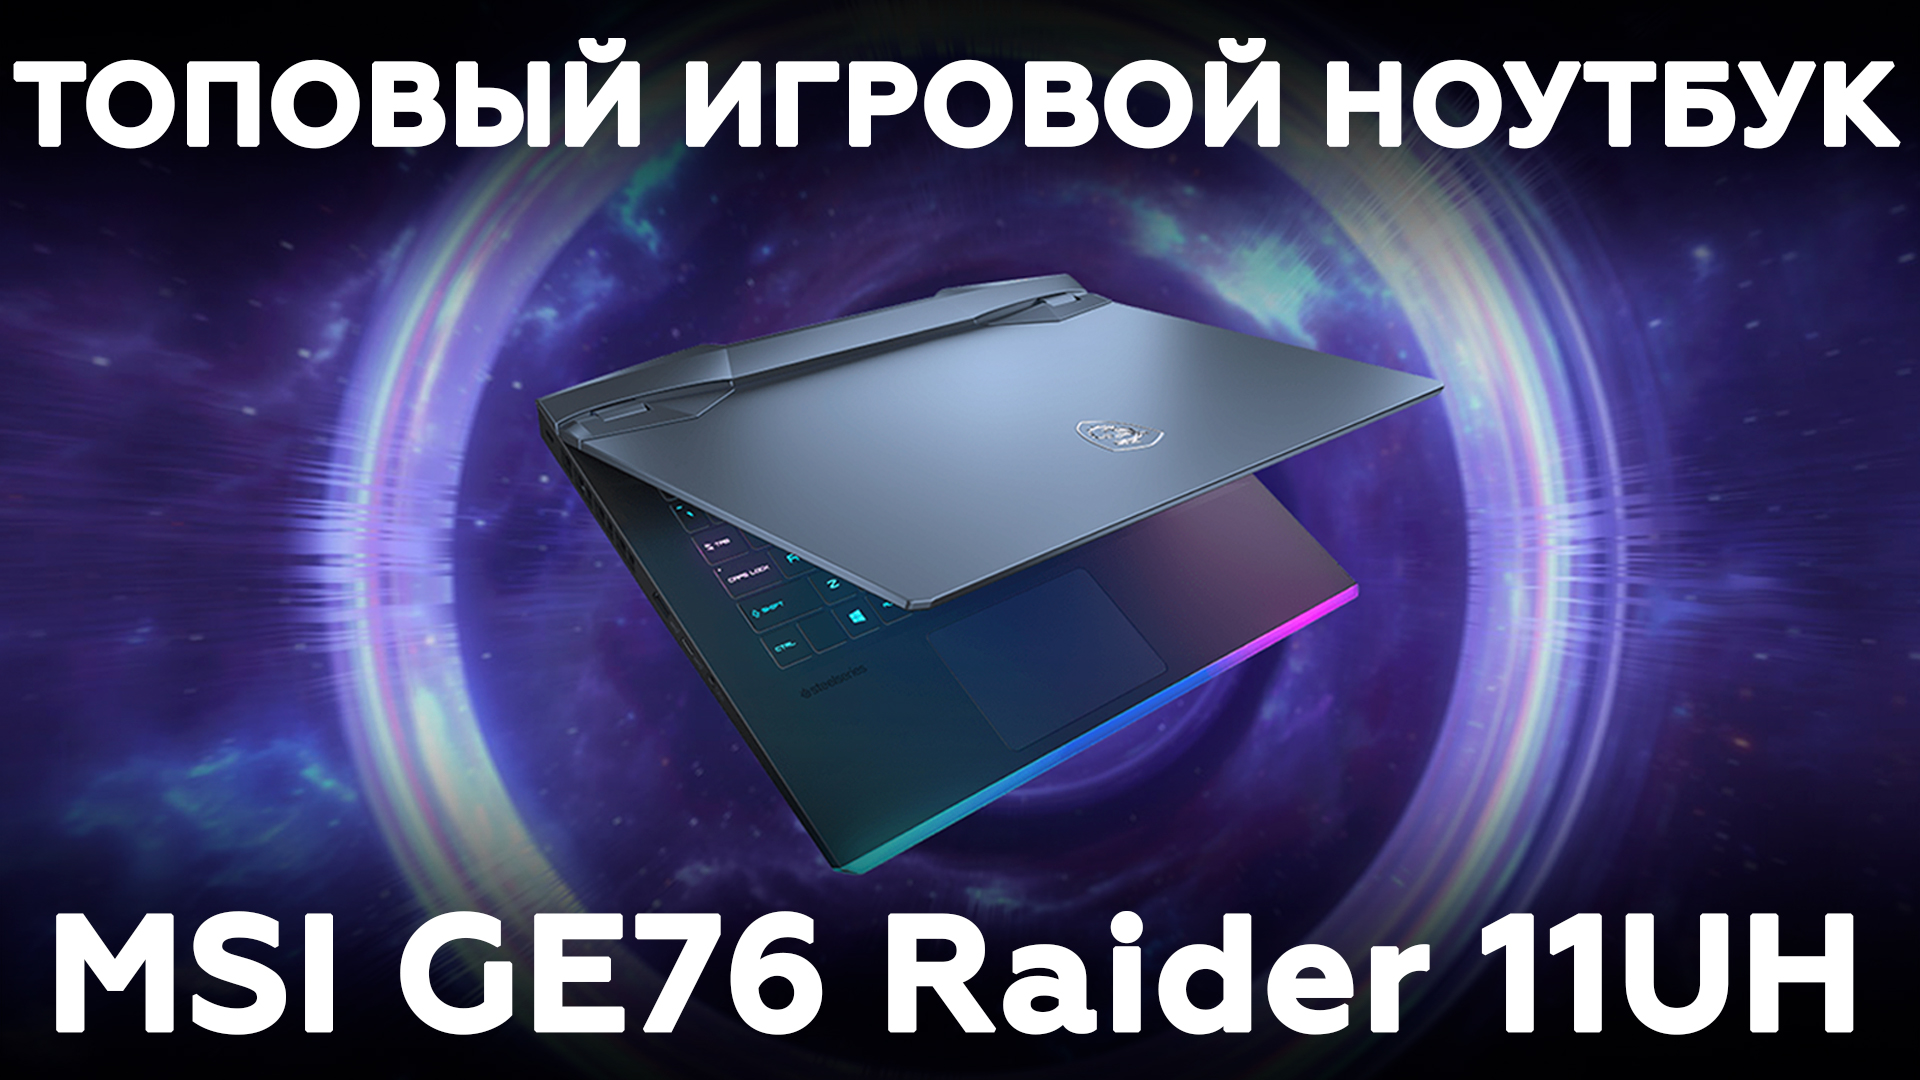 Обзор топового игрового ноутбука MSI GE76 Raider 11UH